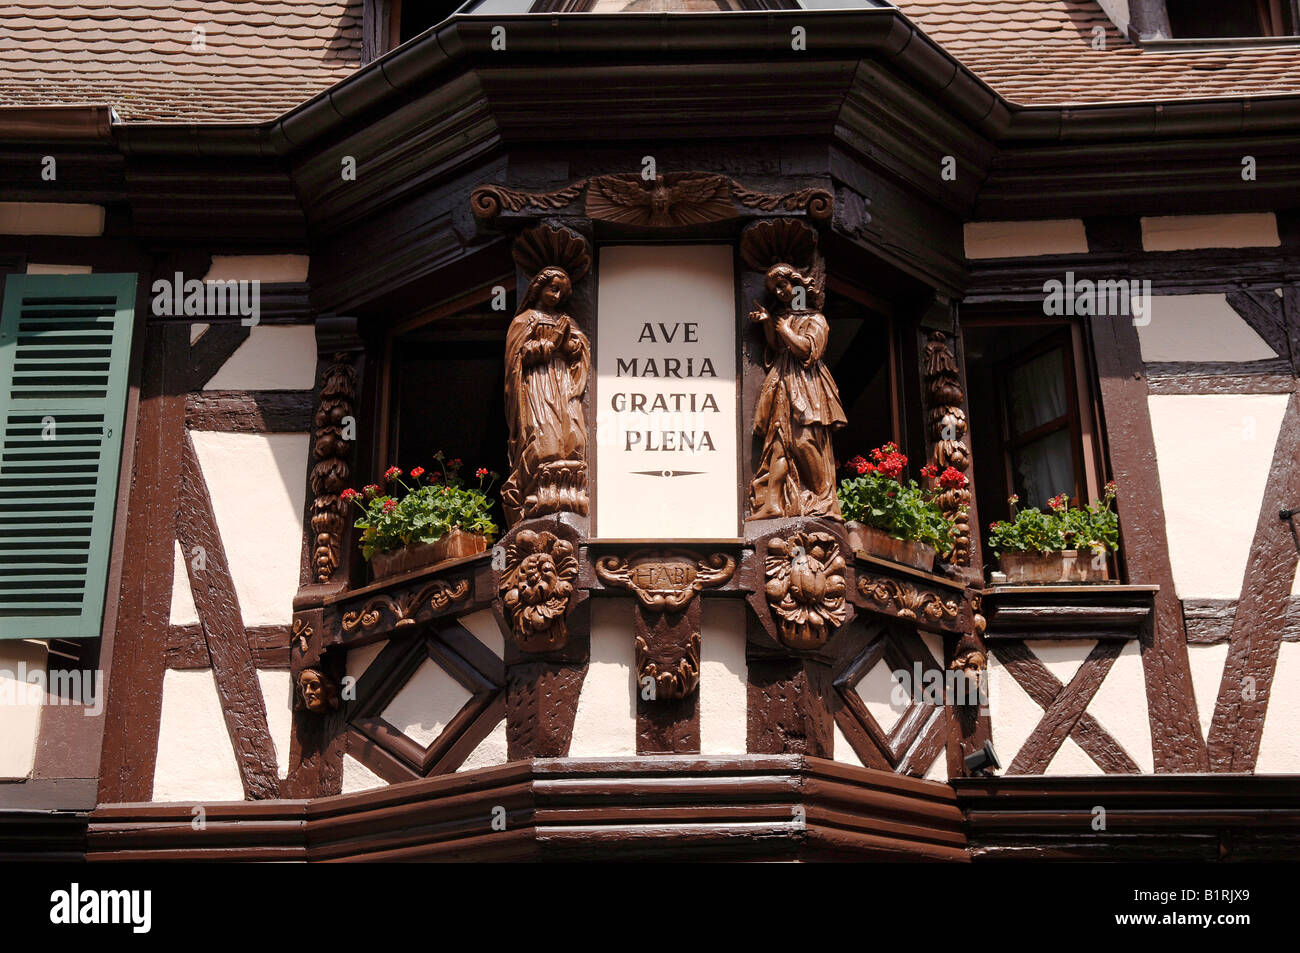 Les chiffres de l'angle en bois sculpté à côté d'une fenêtre d'une maison à colombages dans Ribeauvillee, Alsace, France, Europe Banque D'Images